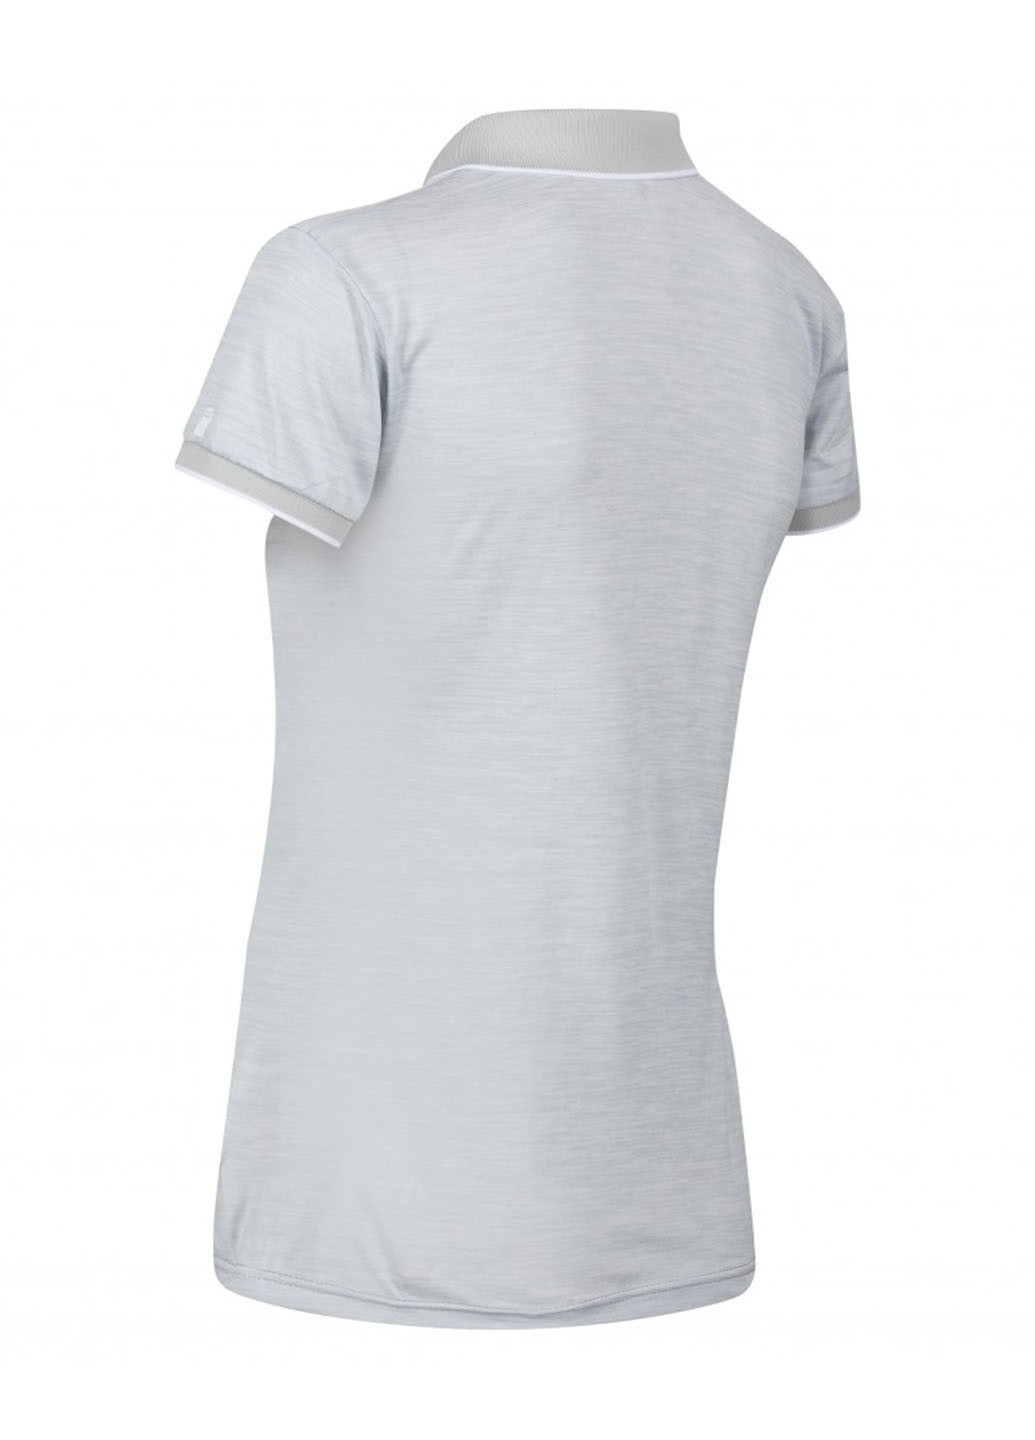 Светло-серая женская футболка-поло Regatta меланжевая